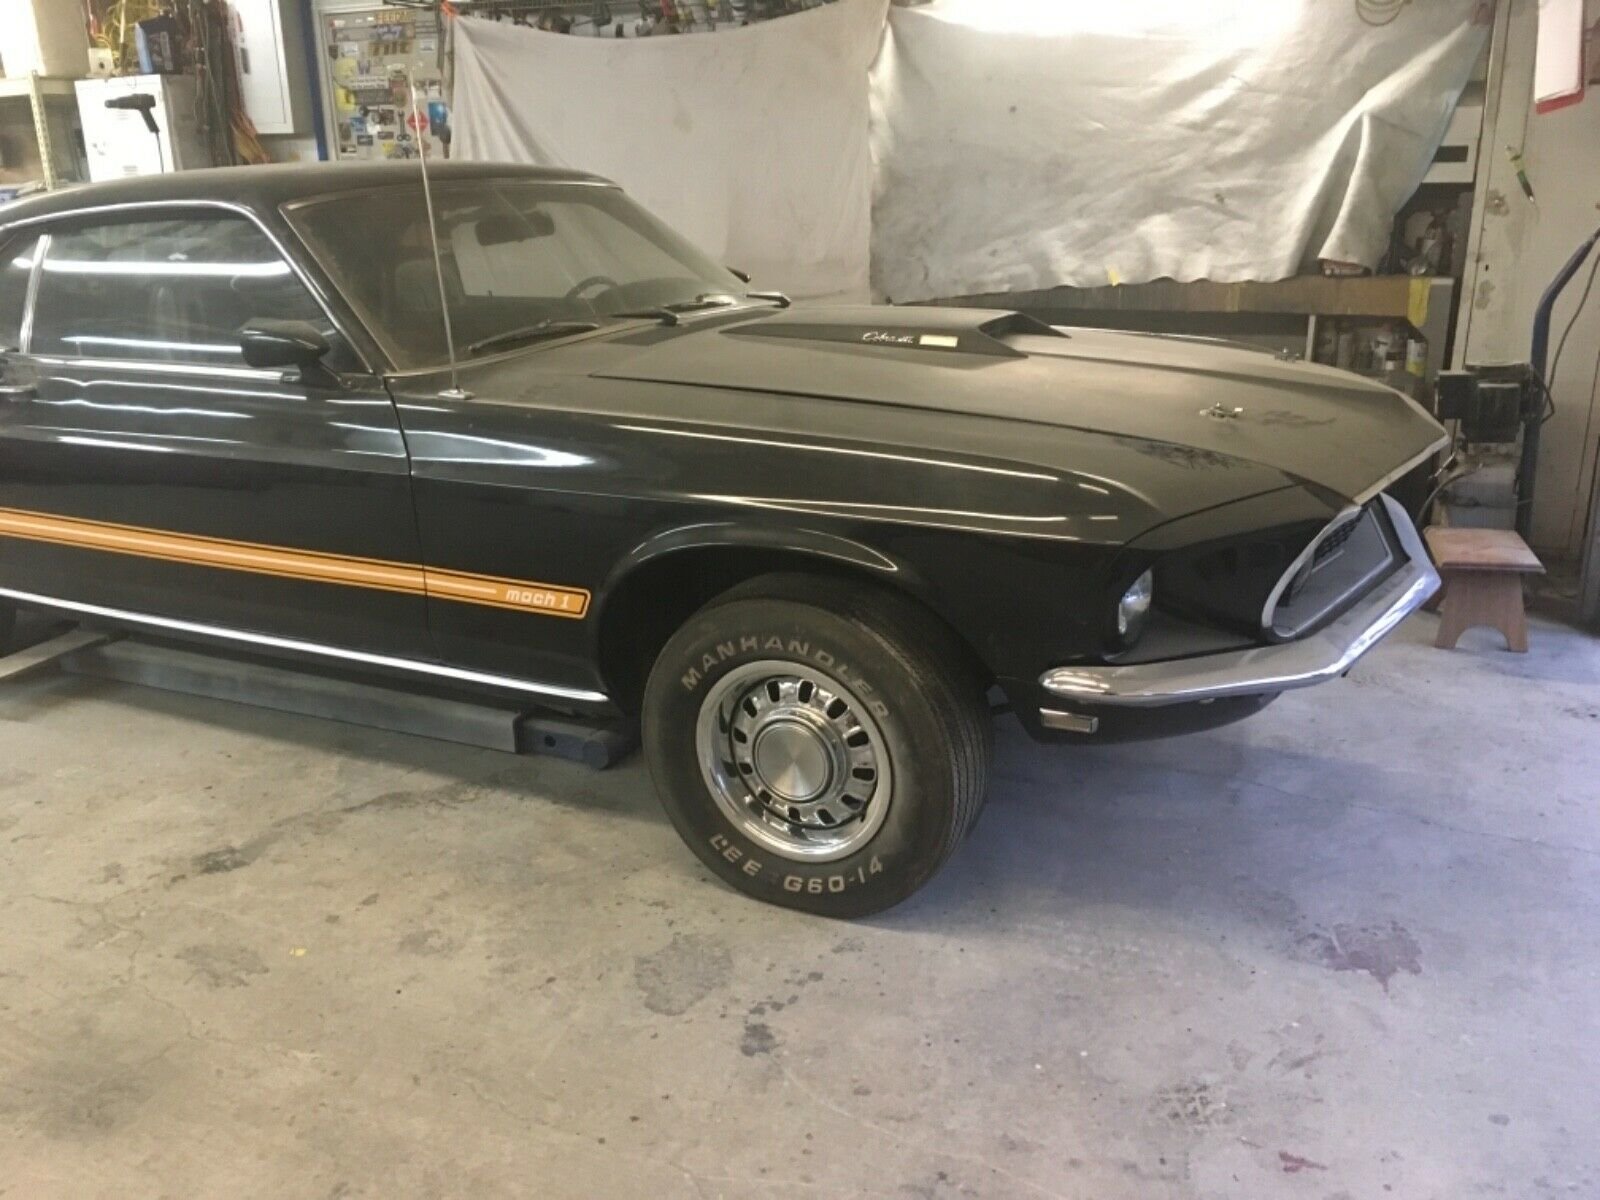 Ford Mustang Mach 1 z roku 1969 stál téměř 40 let odstavený v garáži